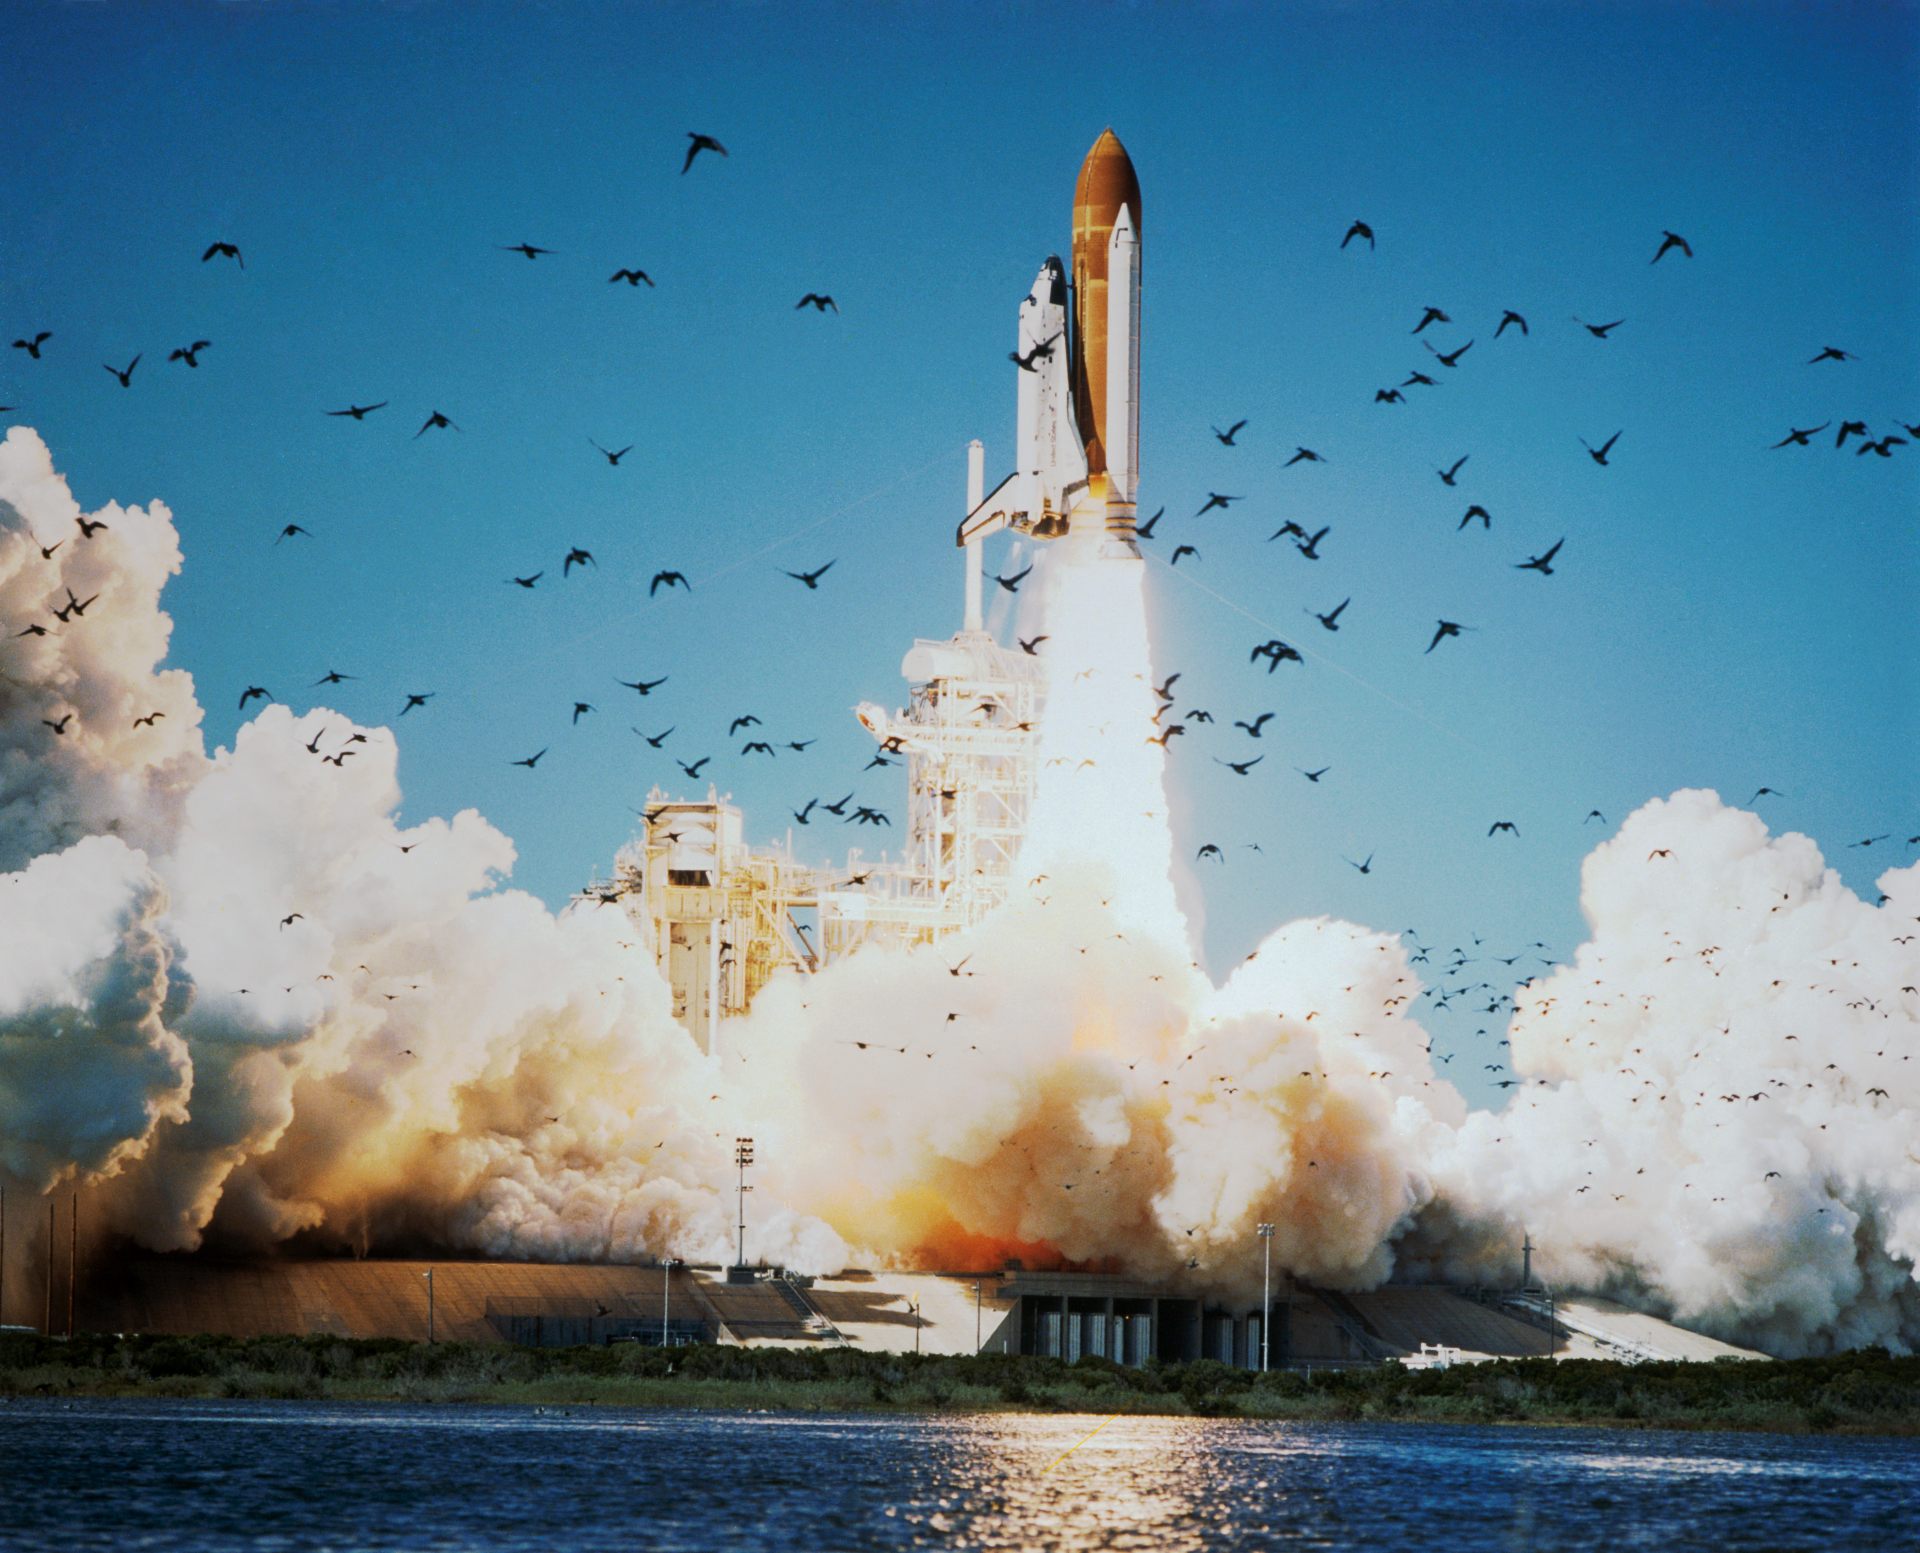 Décollage de la navette Challenger - Kennedy Space Center - 28 janvier 1986 - NASA - STS-51L